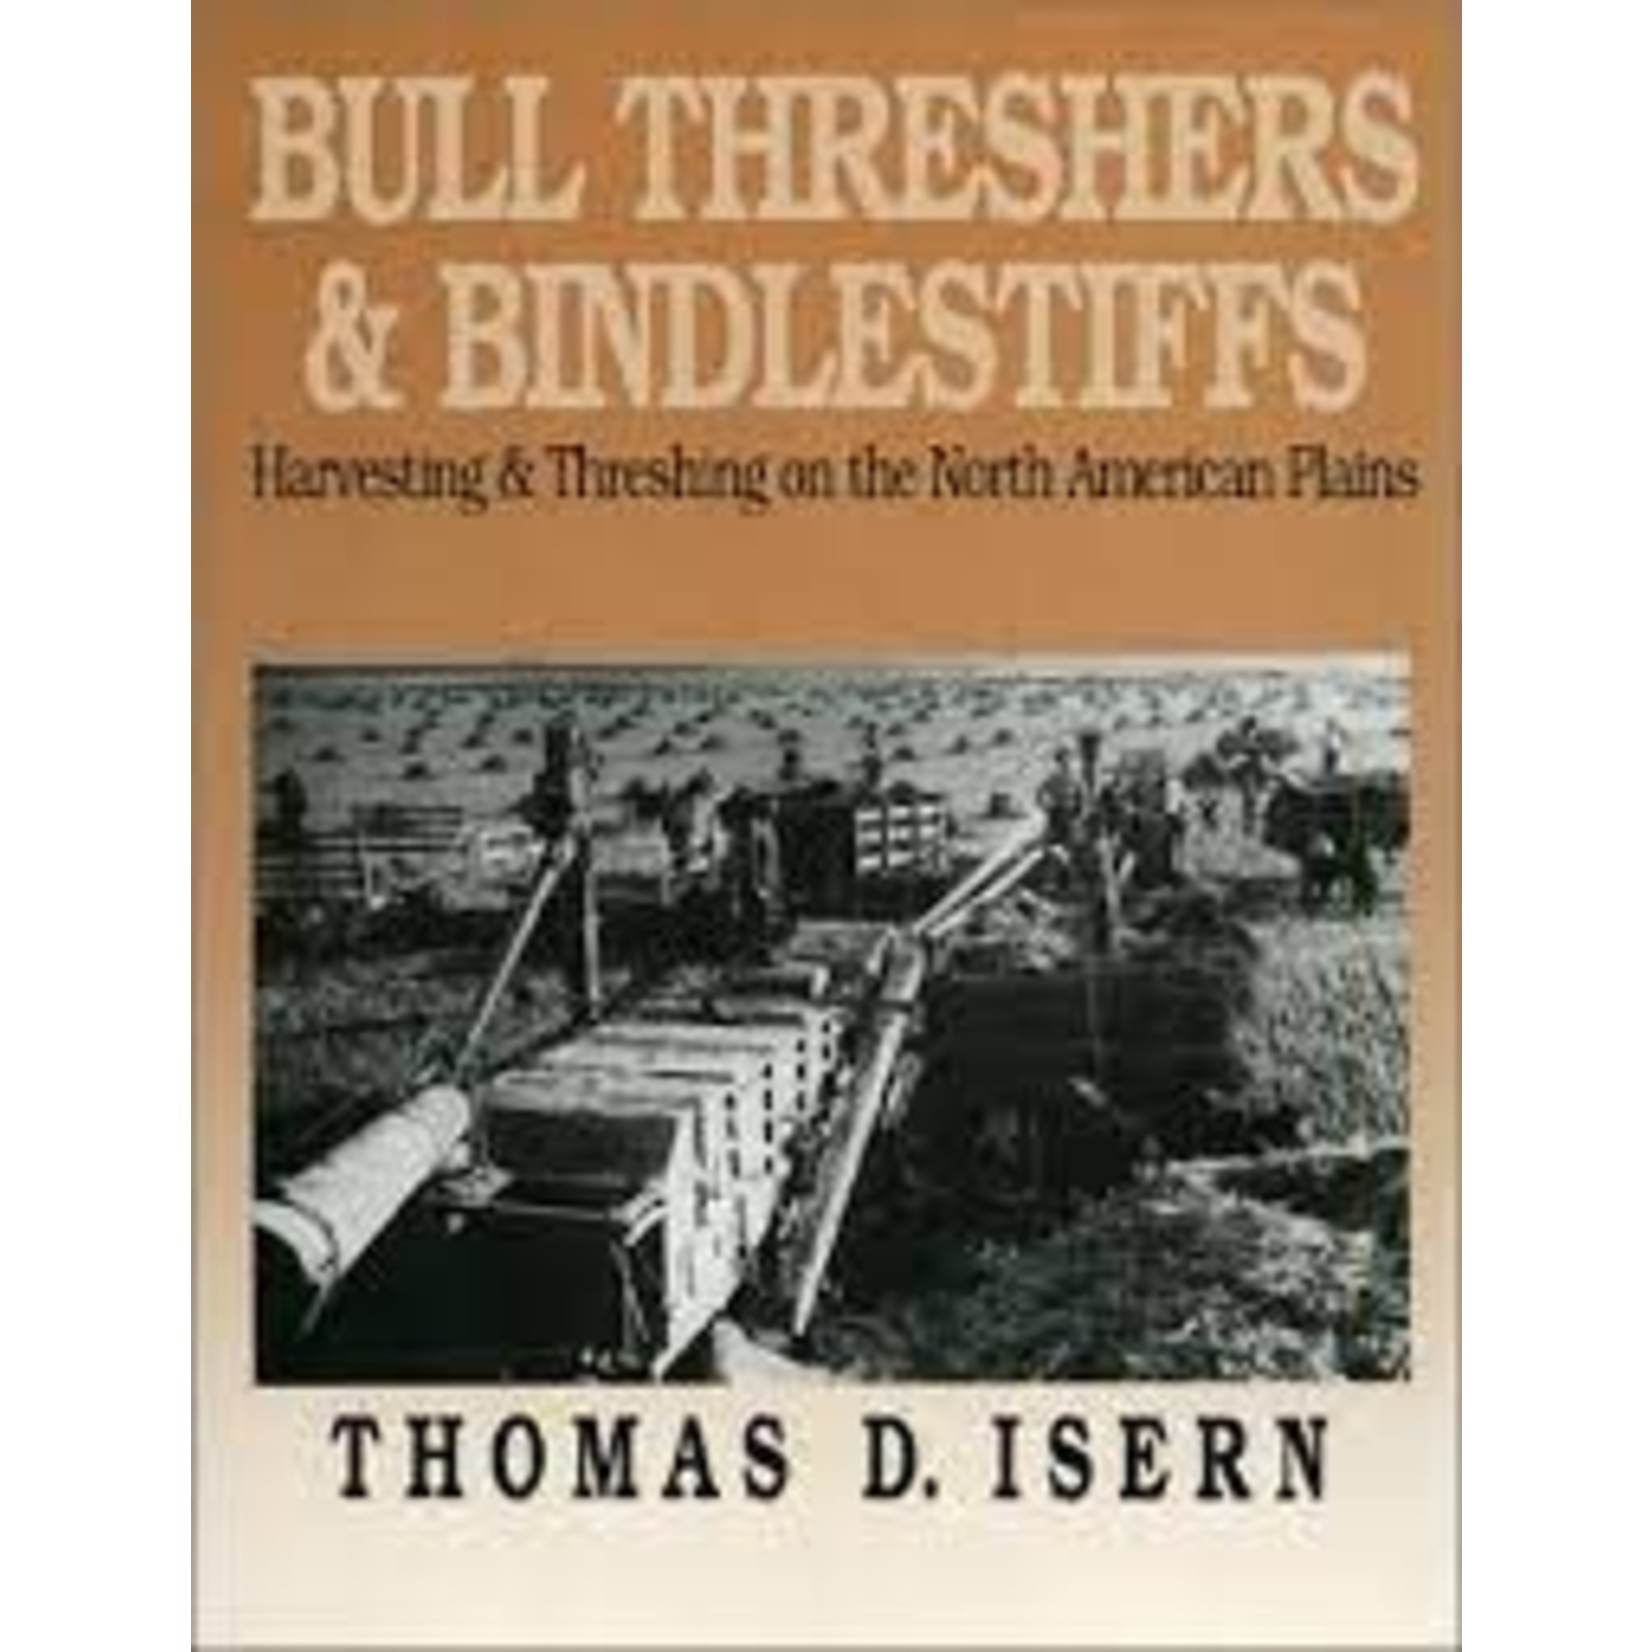 Bull Threshers and Bindlestiffs by Thomas Isern